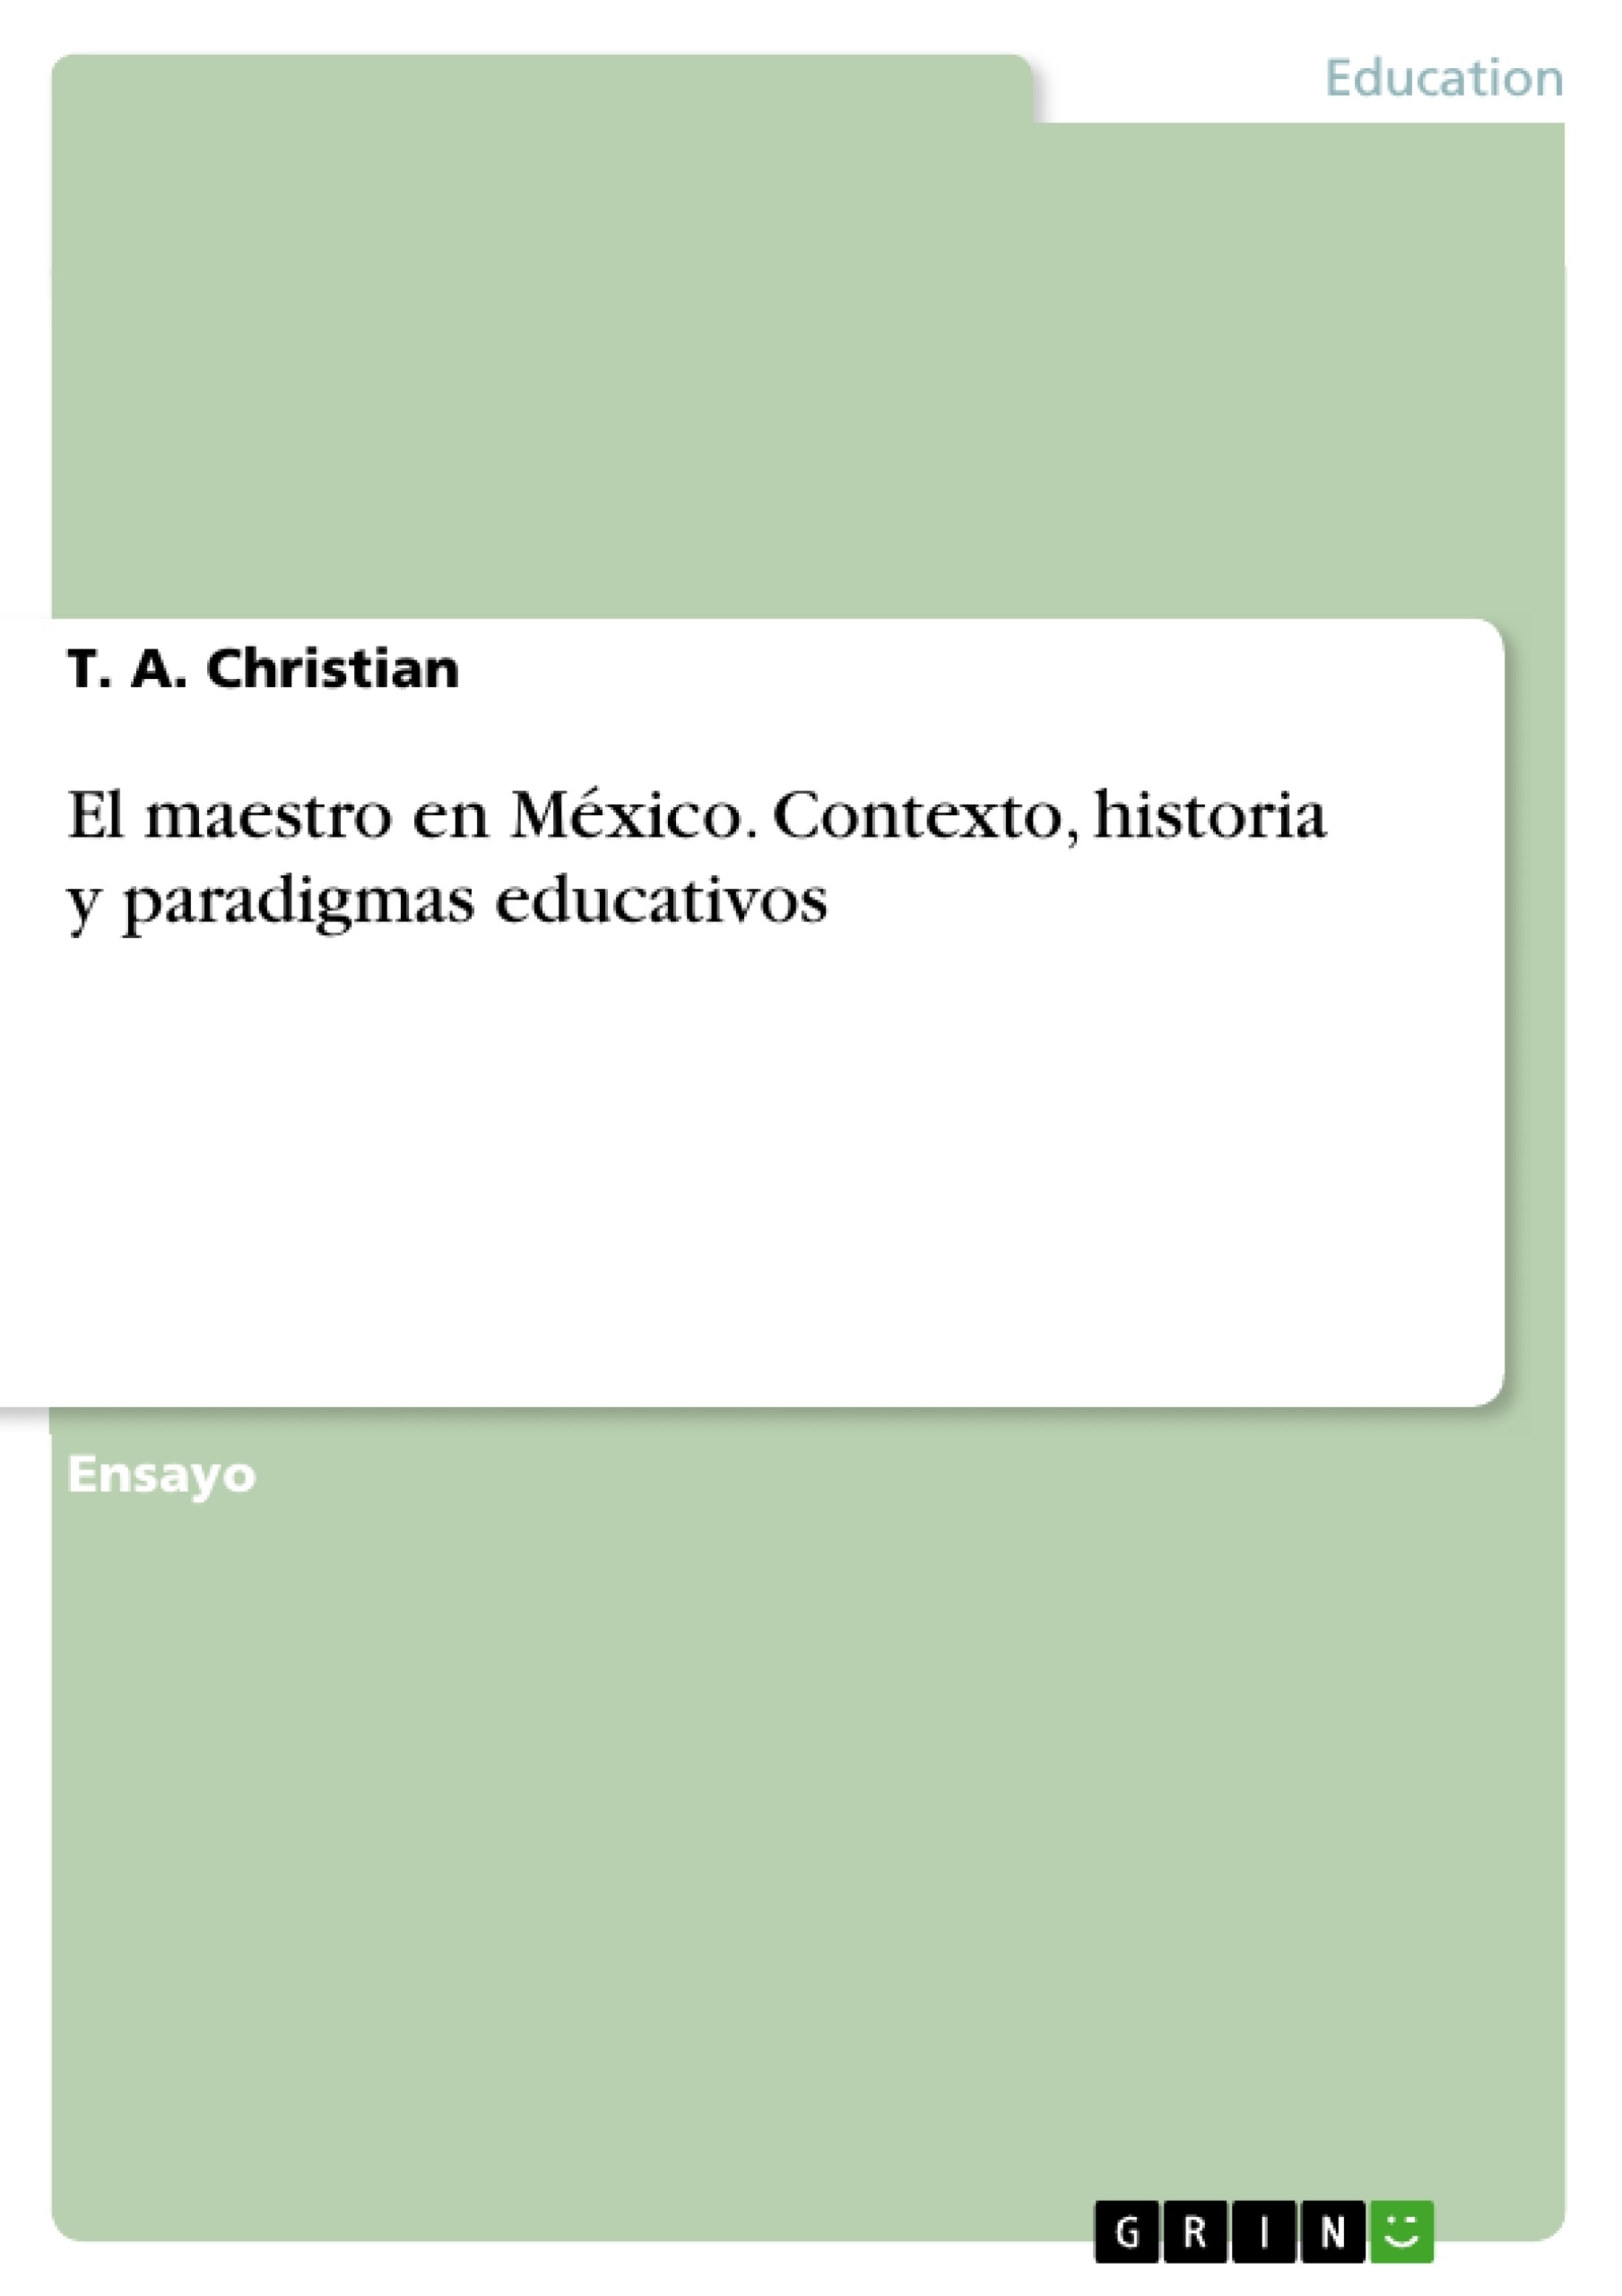 Title: El maestro en México. Contexto, historia y paradigmas educativos